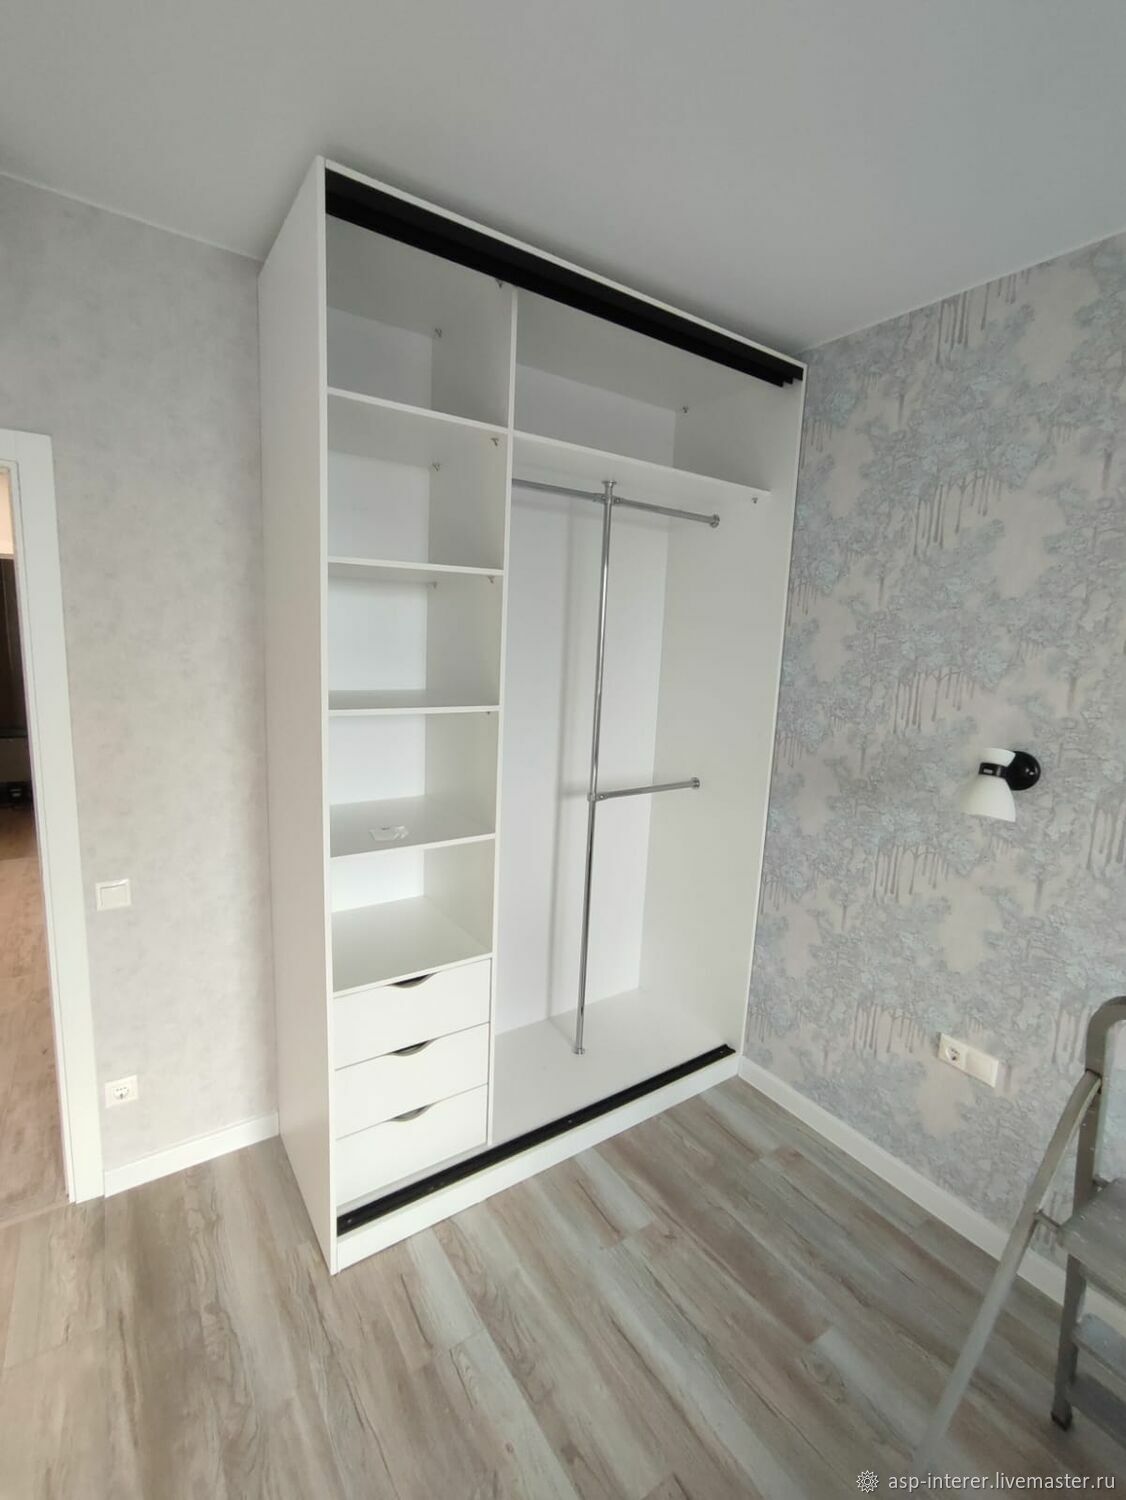 Авв шкаф комбинированный с дверью с вентиляционными отверстиями 5 рядов 24м uk662cv